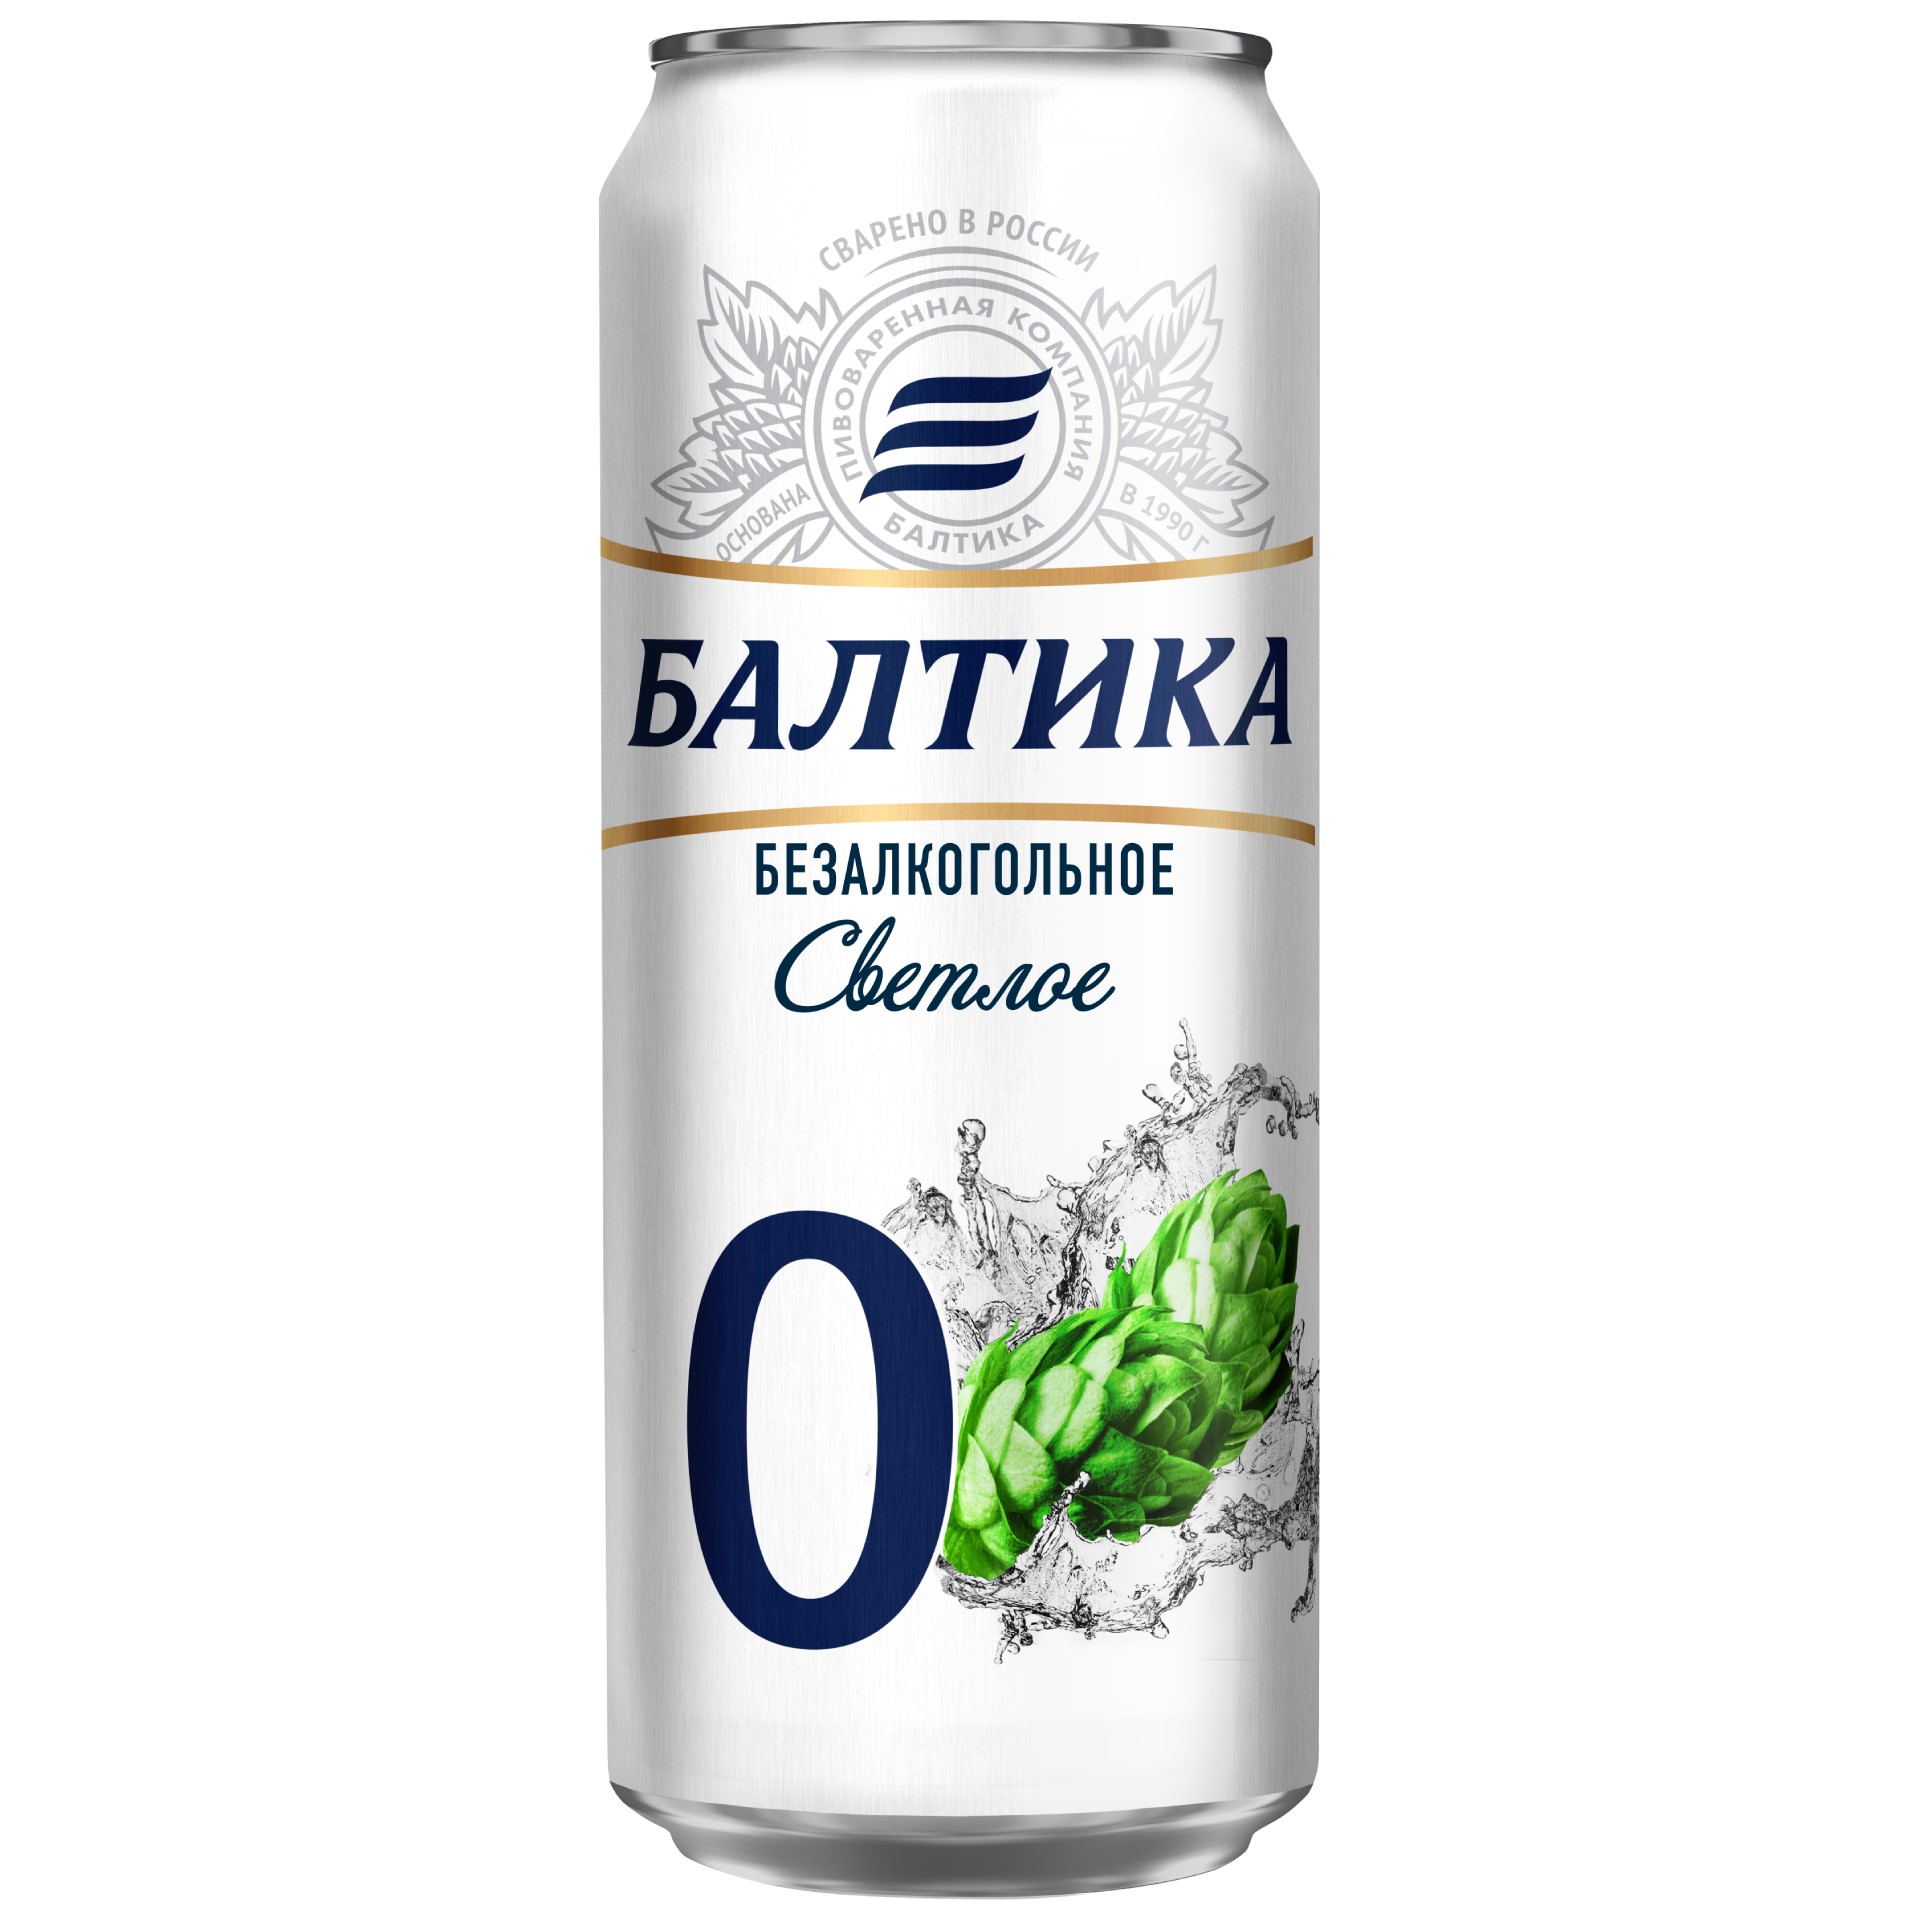 Пиво Балтика №0 безалкогольное Светлое, 0.45 л, банка